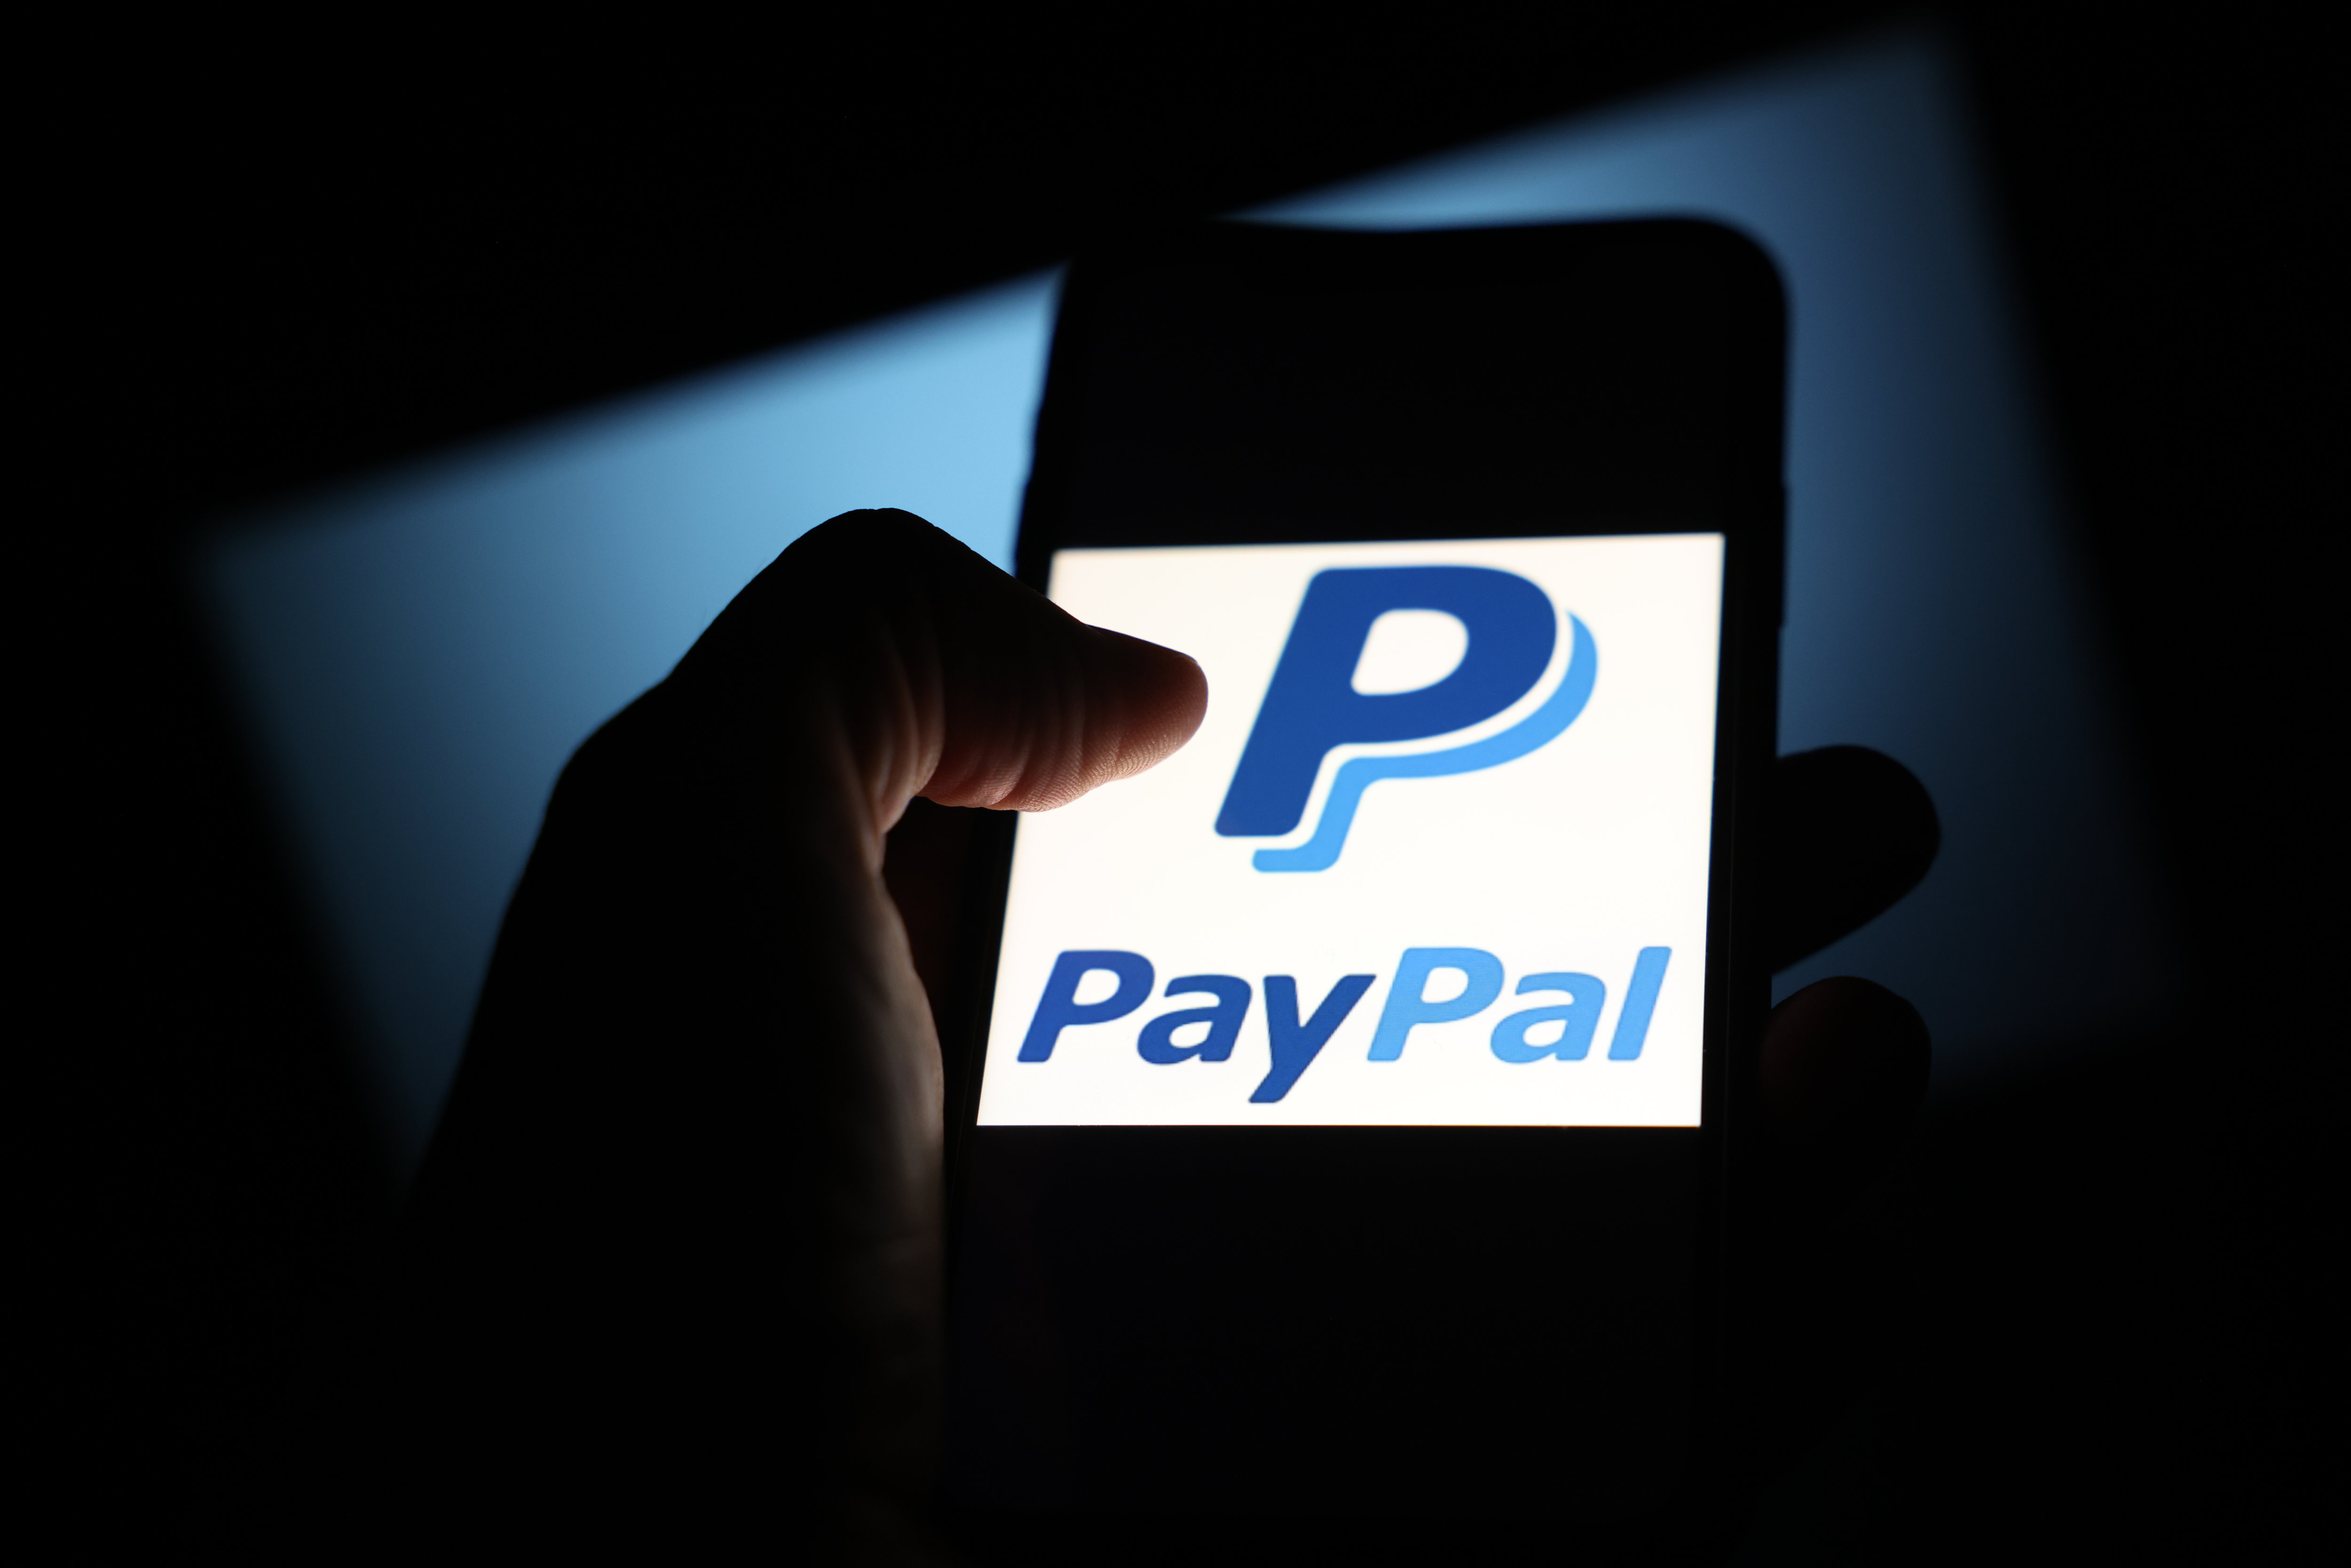 PayPal a fait fortune dans le paiement en ligne, avec 426 millions de clients actifs et un chiffre d’affaires proche des 20 milliards de dollars selon les années. (Illustration.) LP/Arnaud Journois